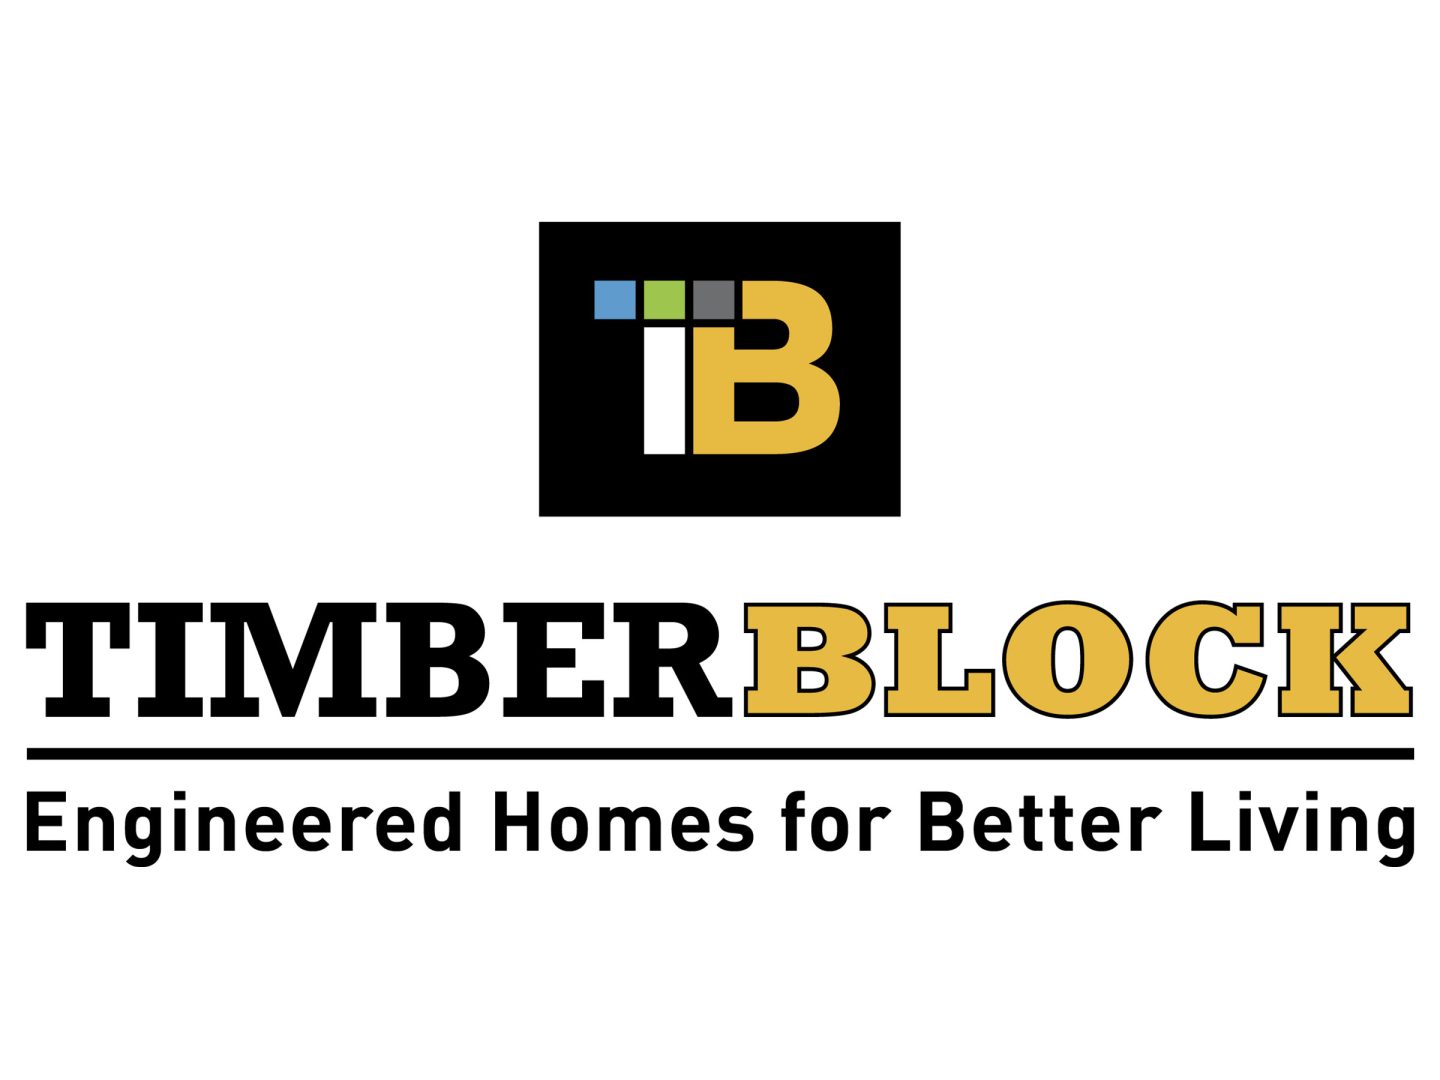 Timber block logo.